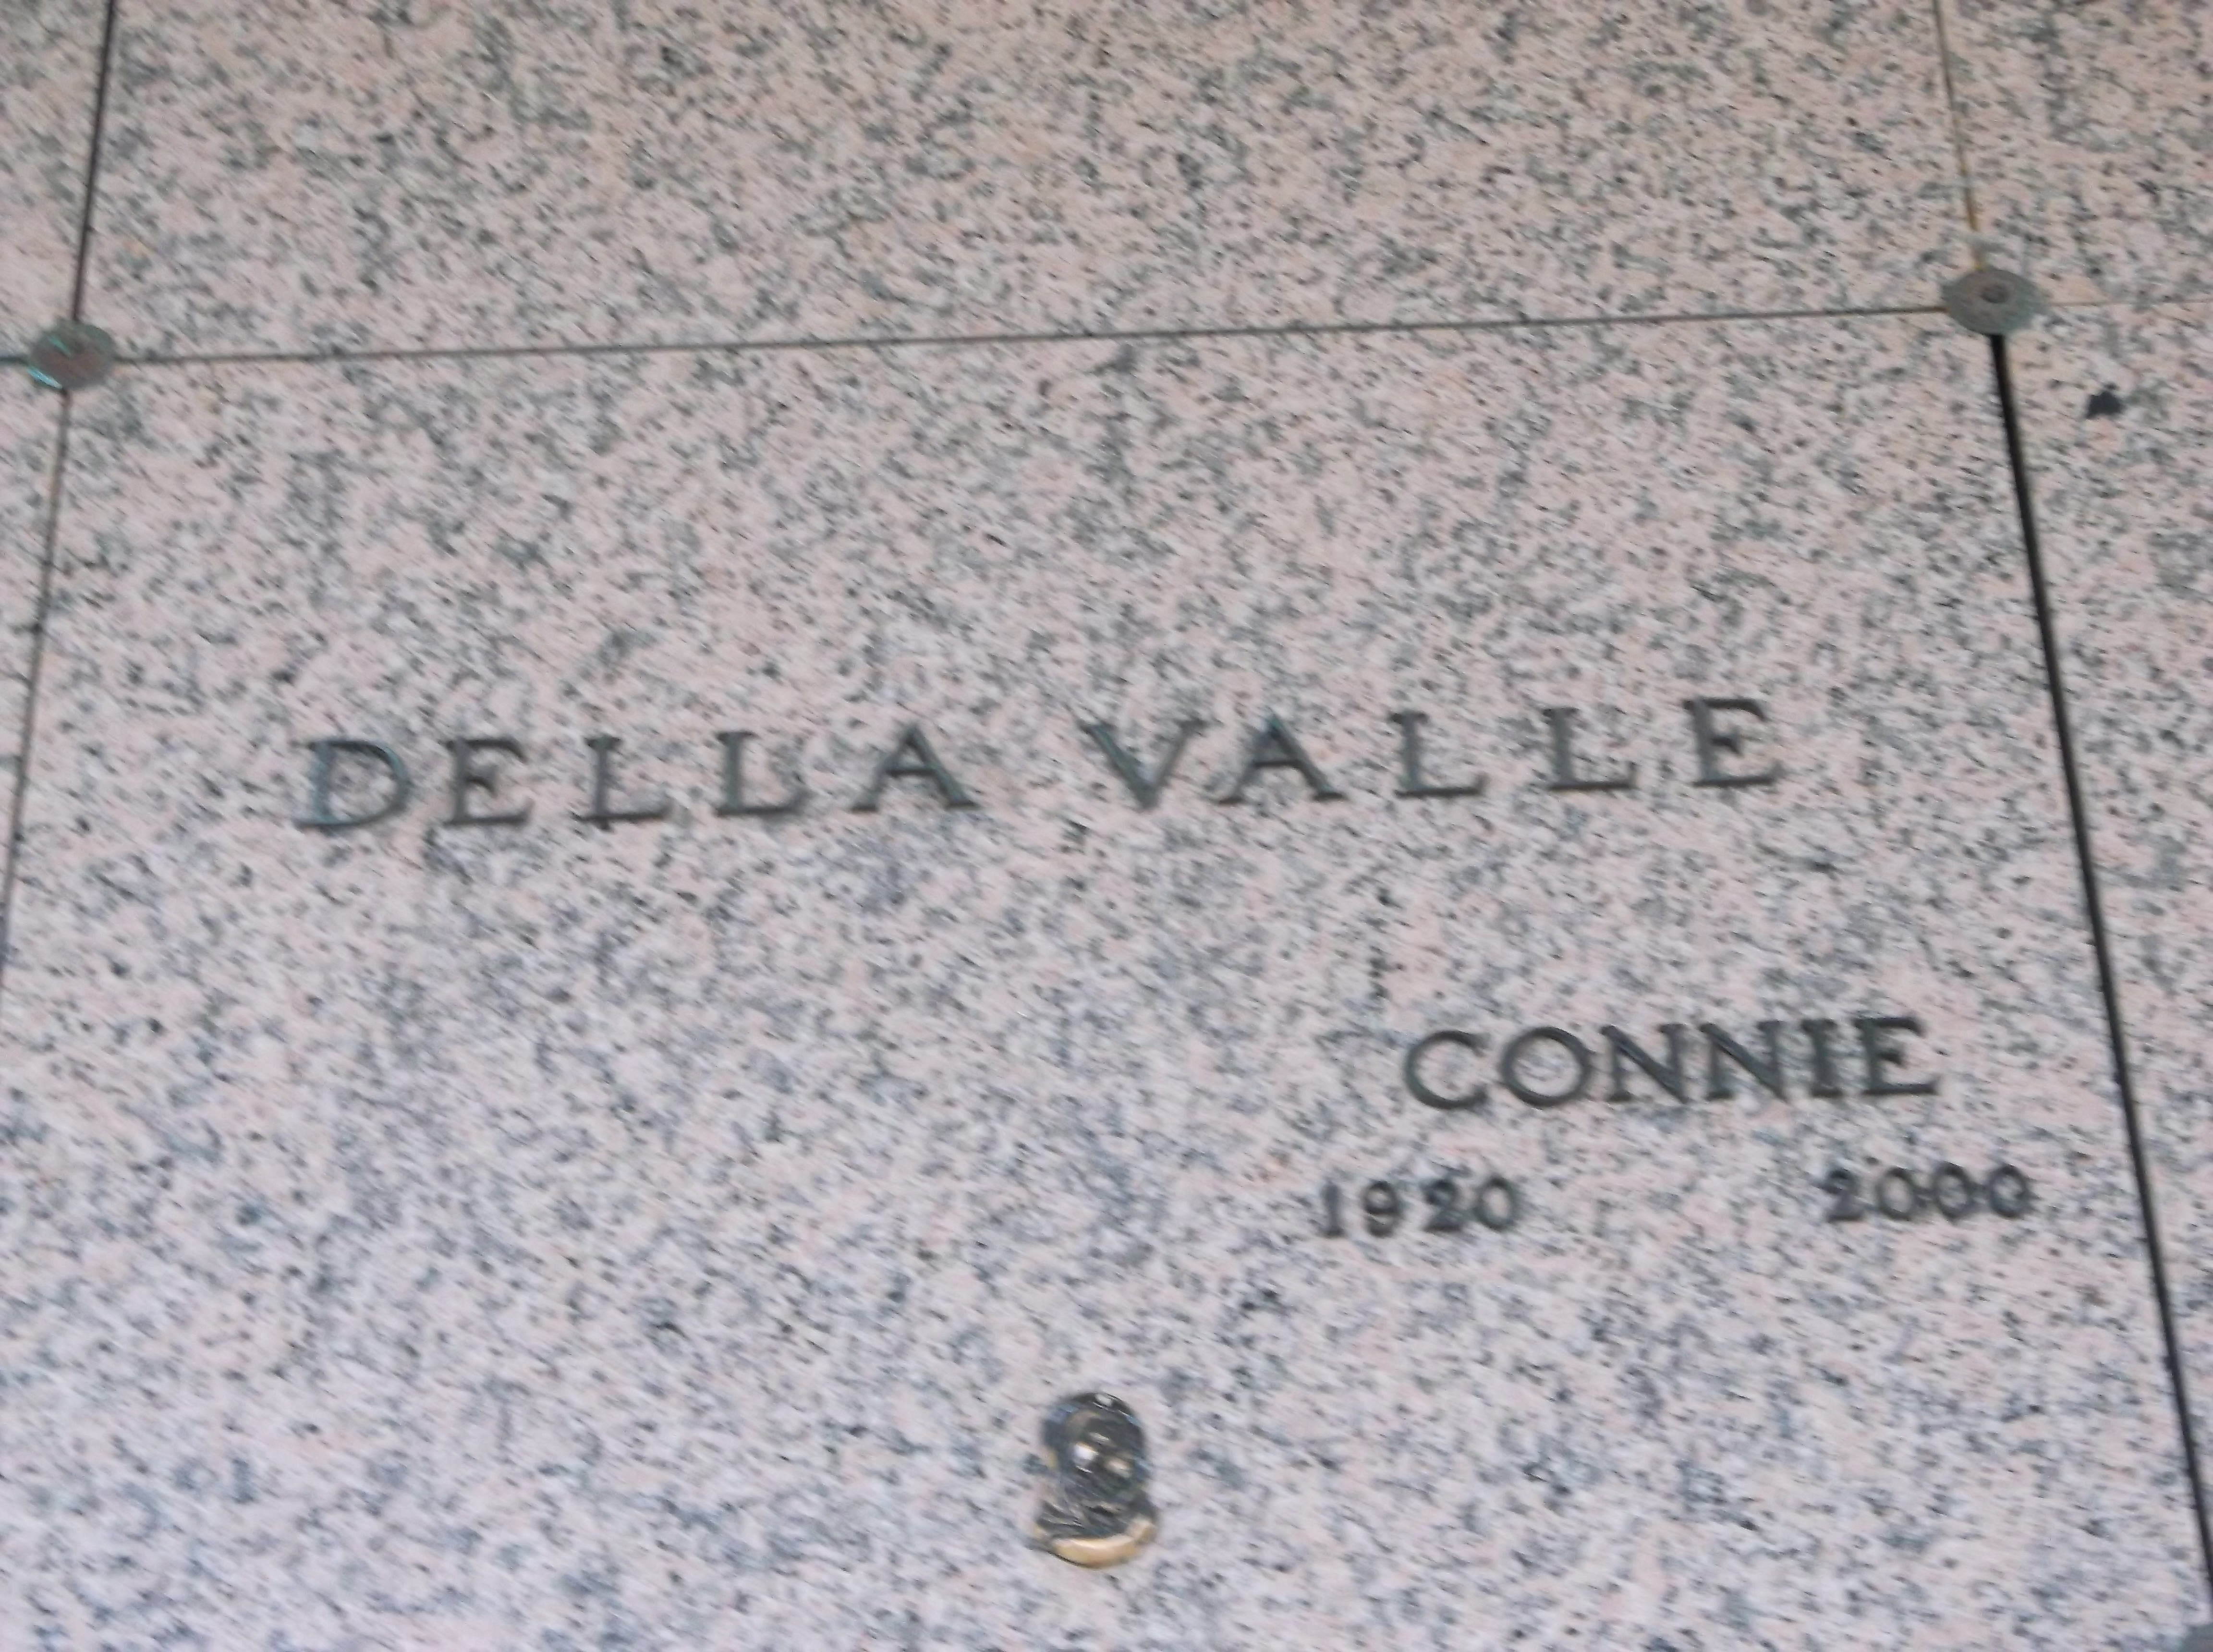 Connie Della Valle